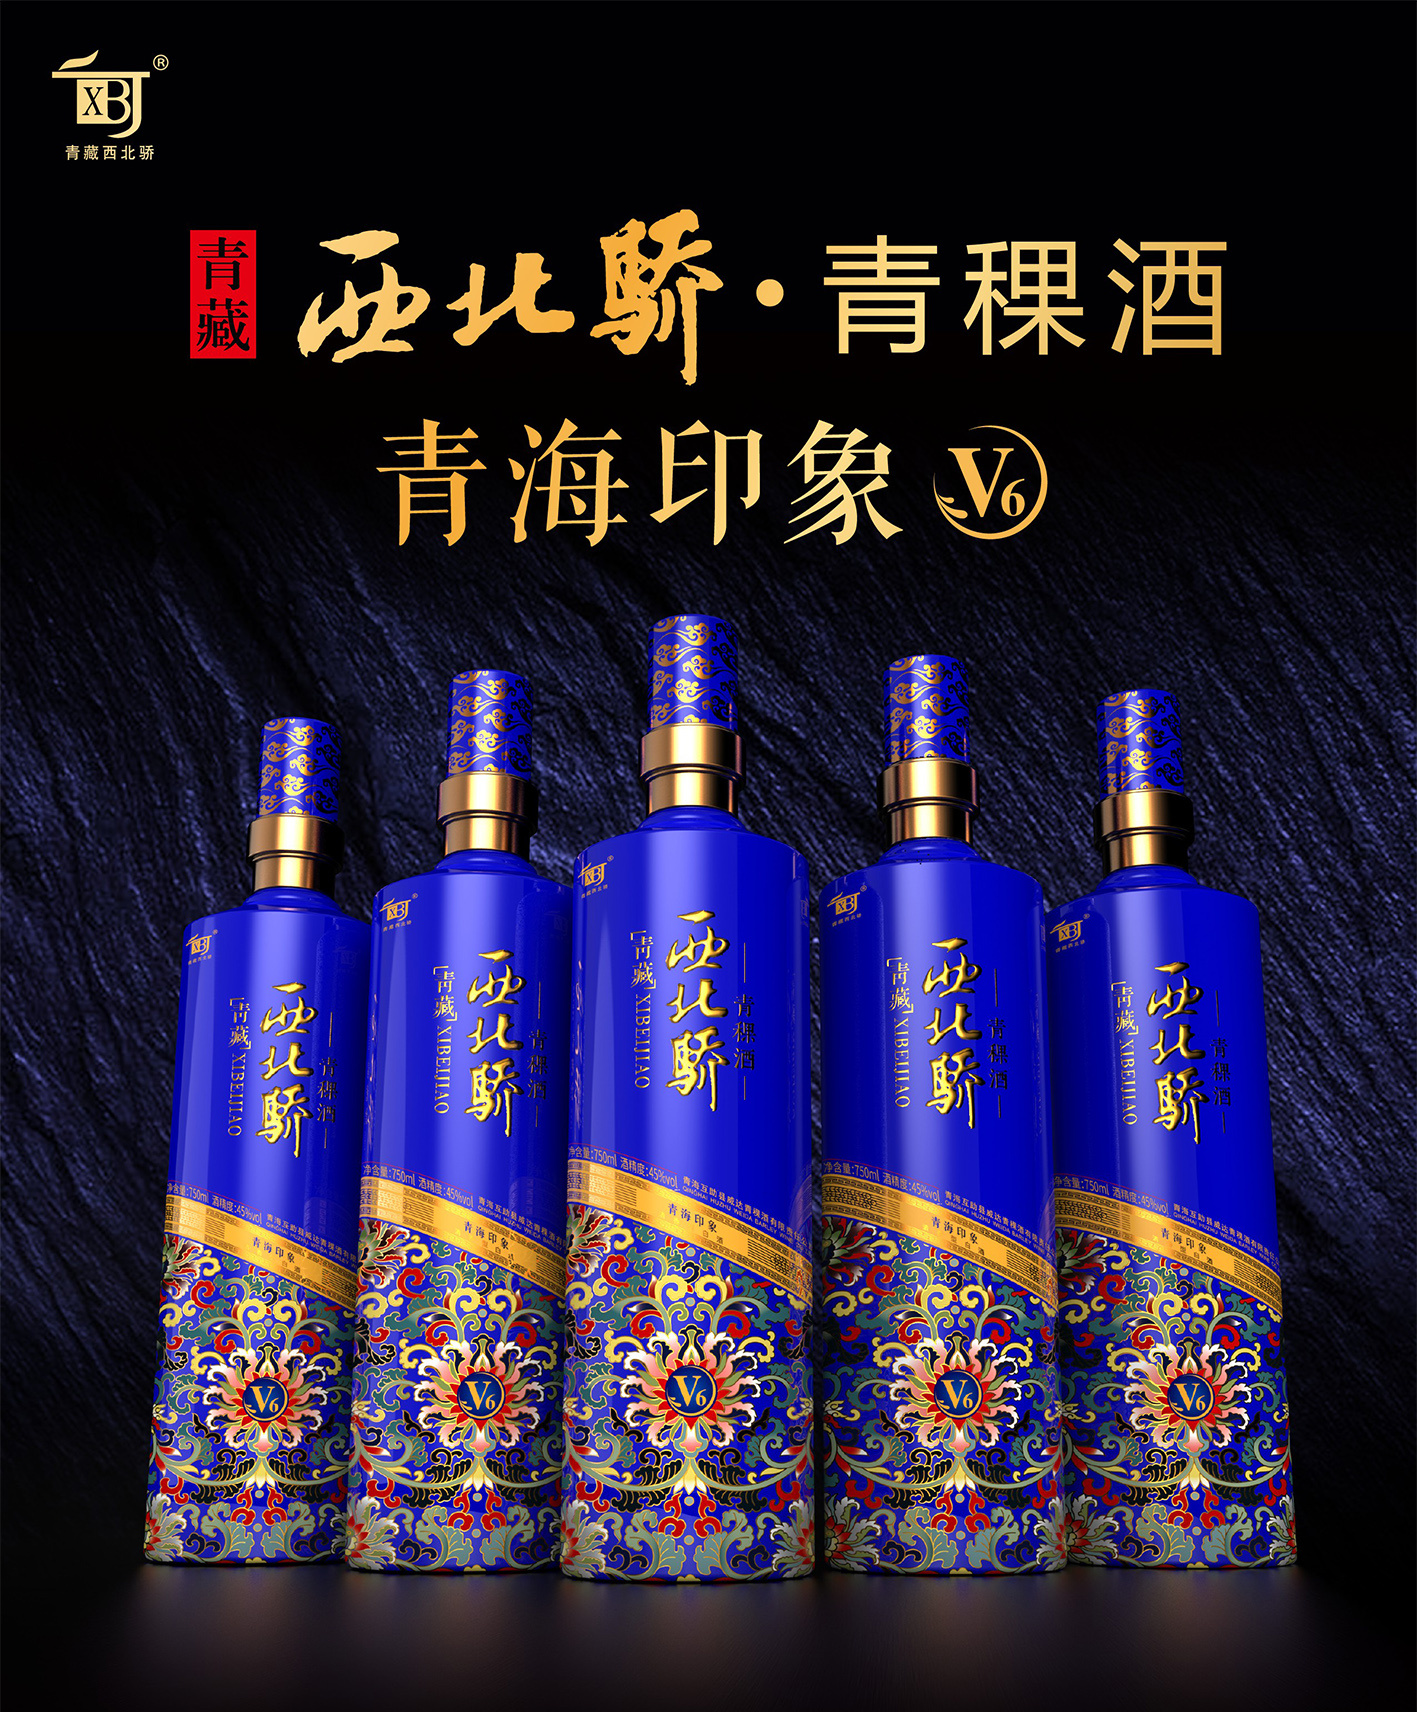 青稞酒-中国名优酒-图片